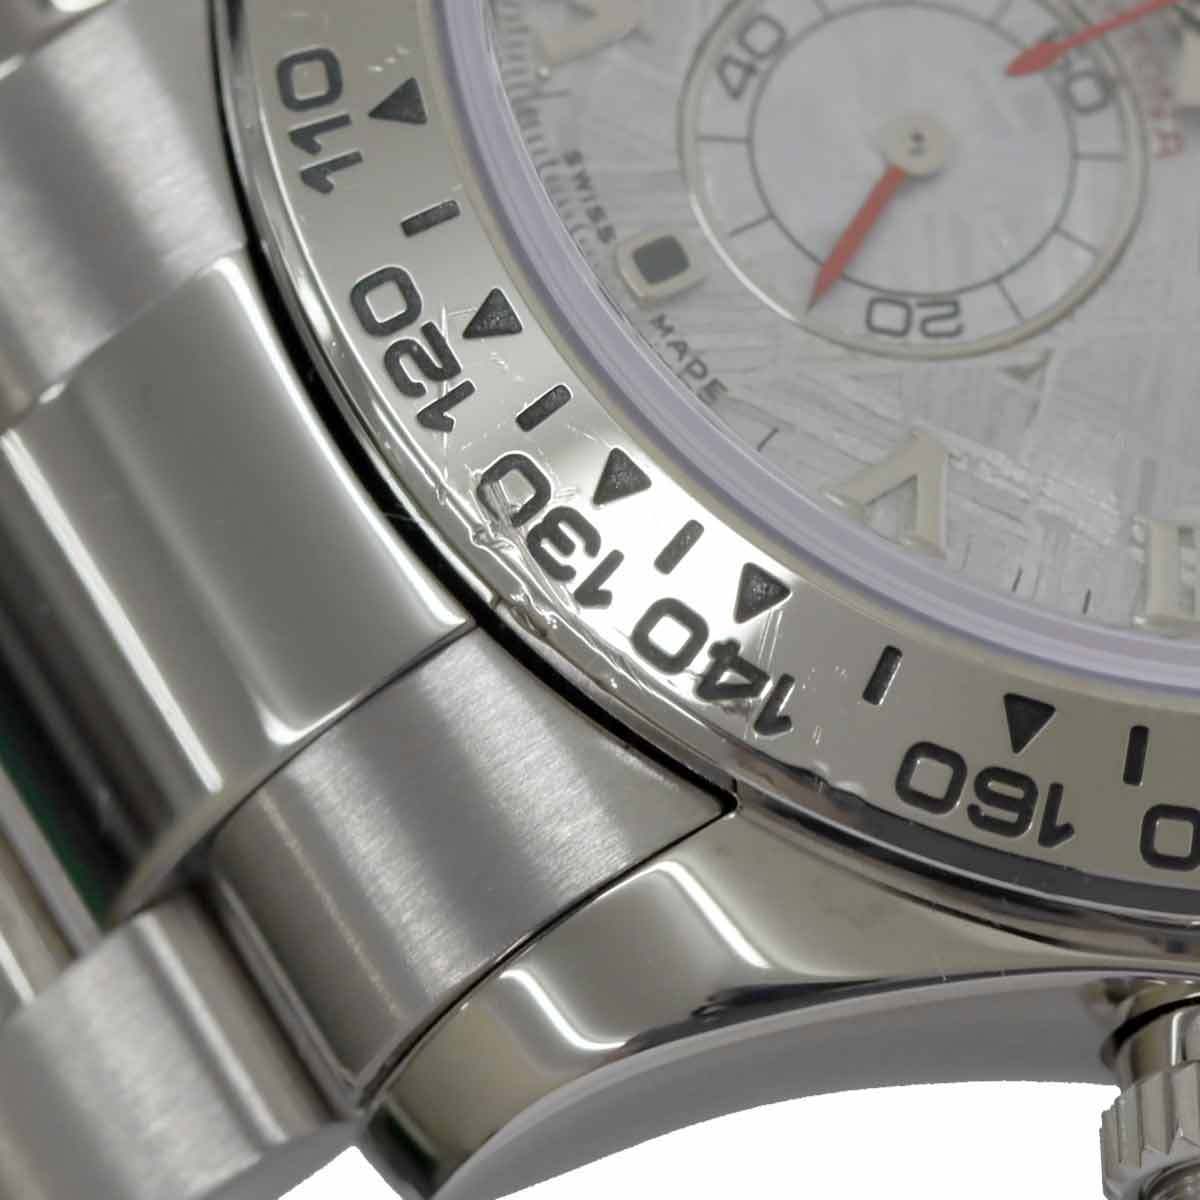 ロレックス ROLEX デイトナ 116509 M番 ルーレット クロノグラフ メンズ 腕時計 メテオライト 文字盤 K18WG 自動巻き Daytona 90152452_画像7